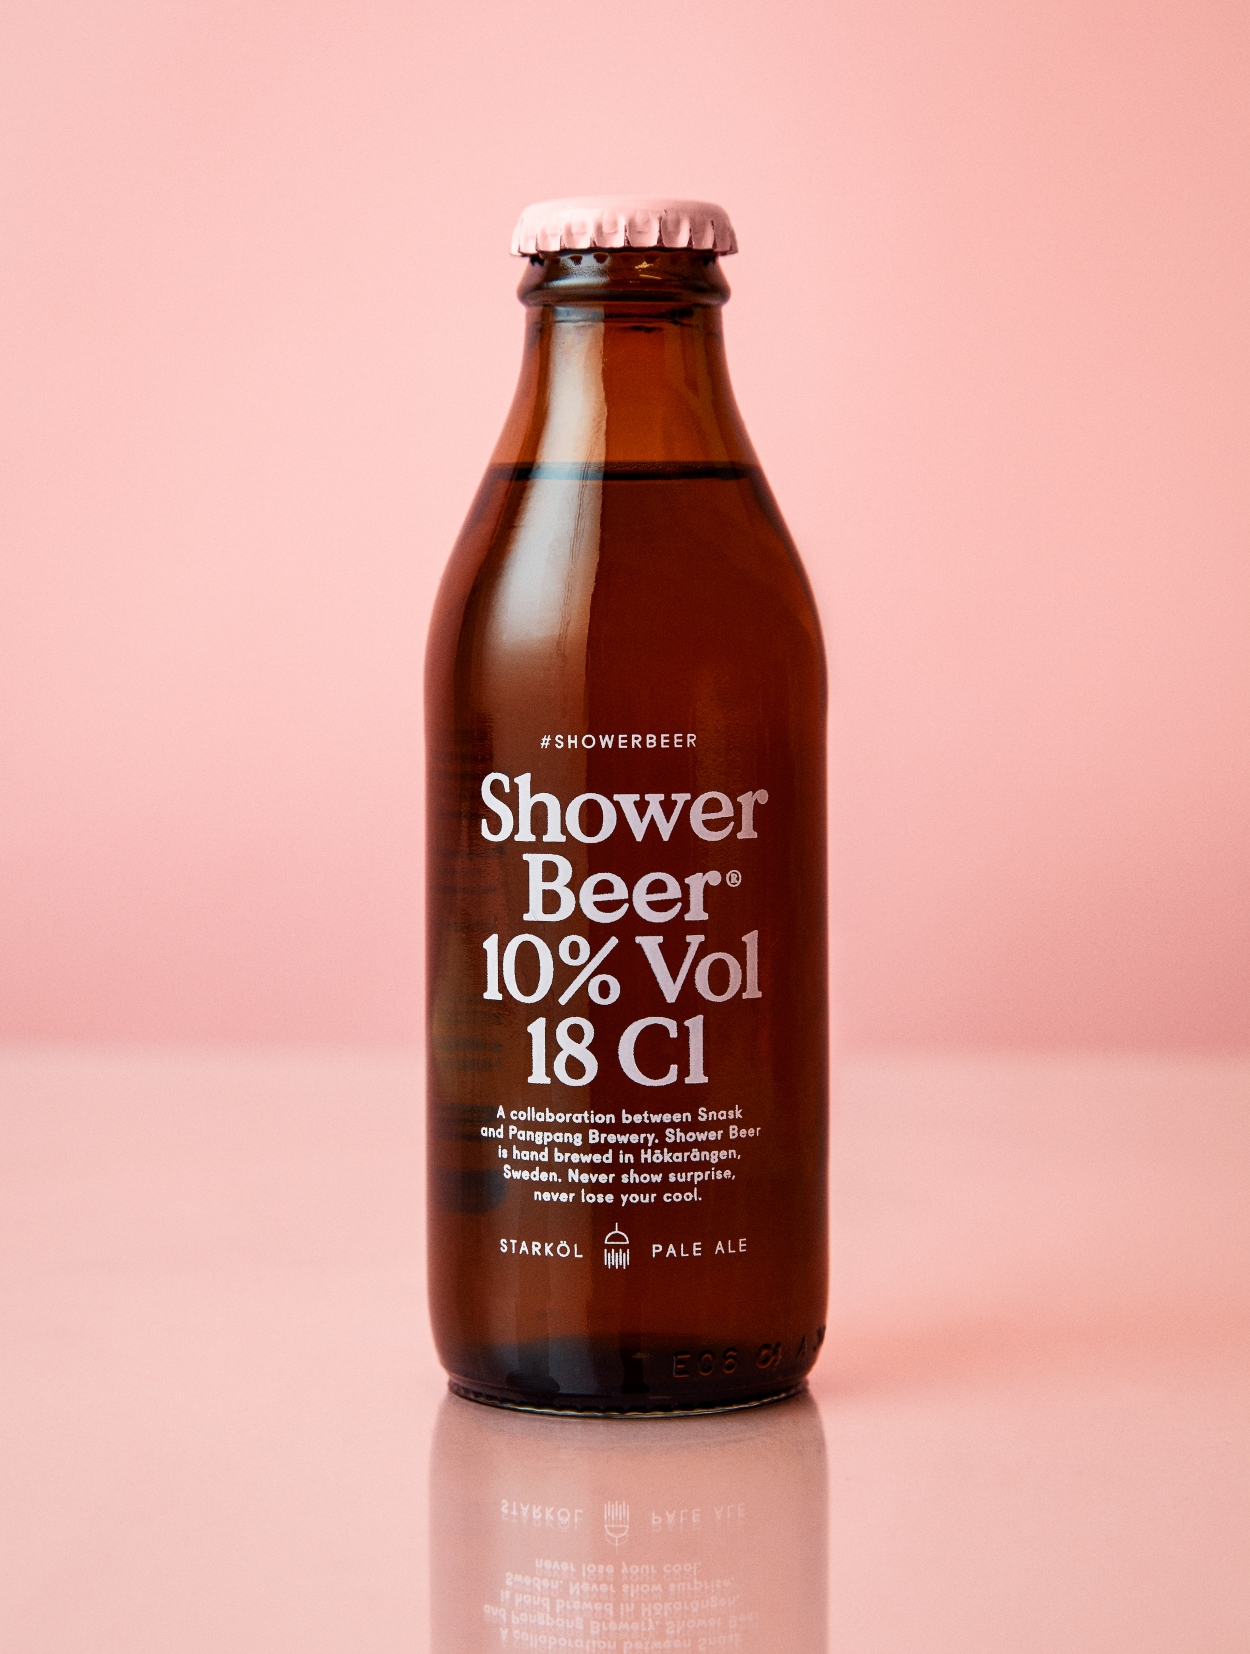 content_fubiz-shower-beer-snask-advertising-01